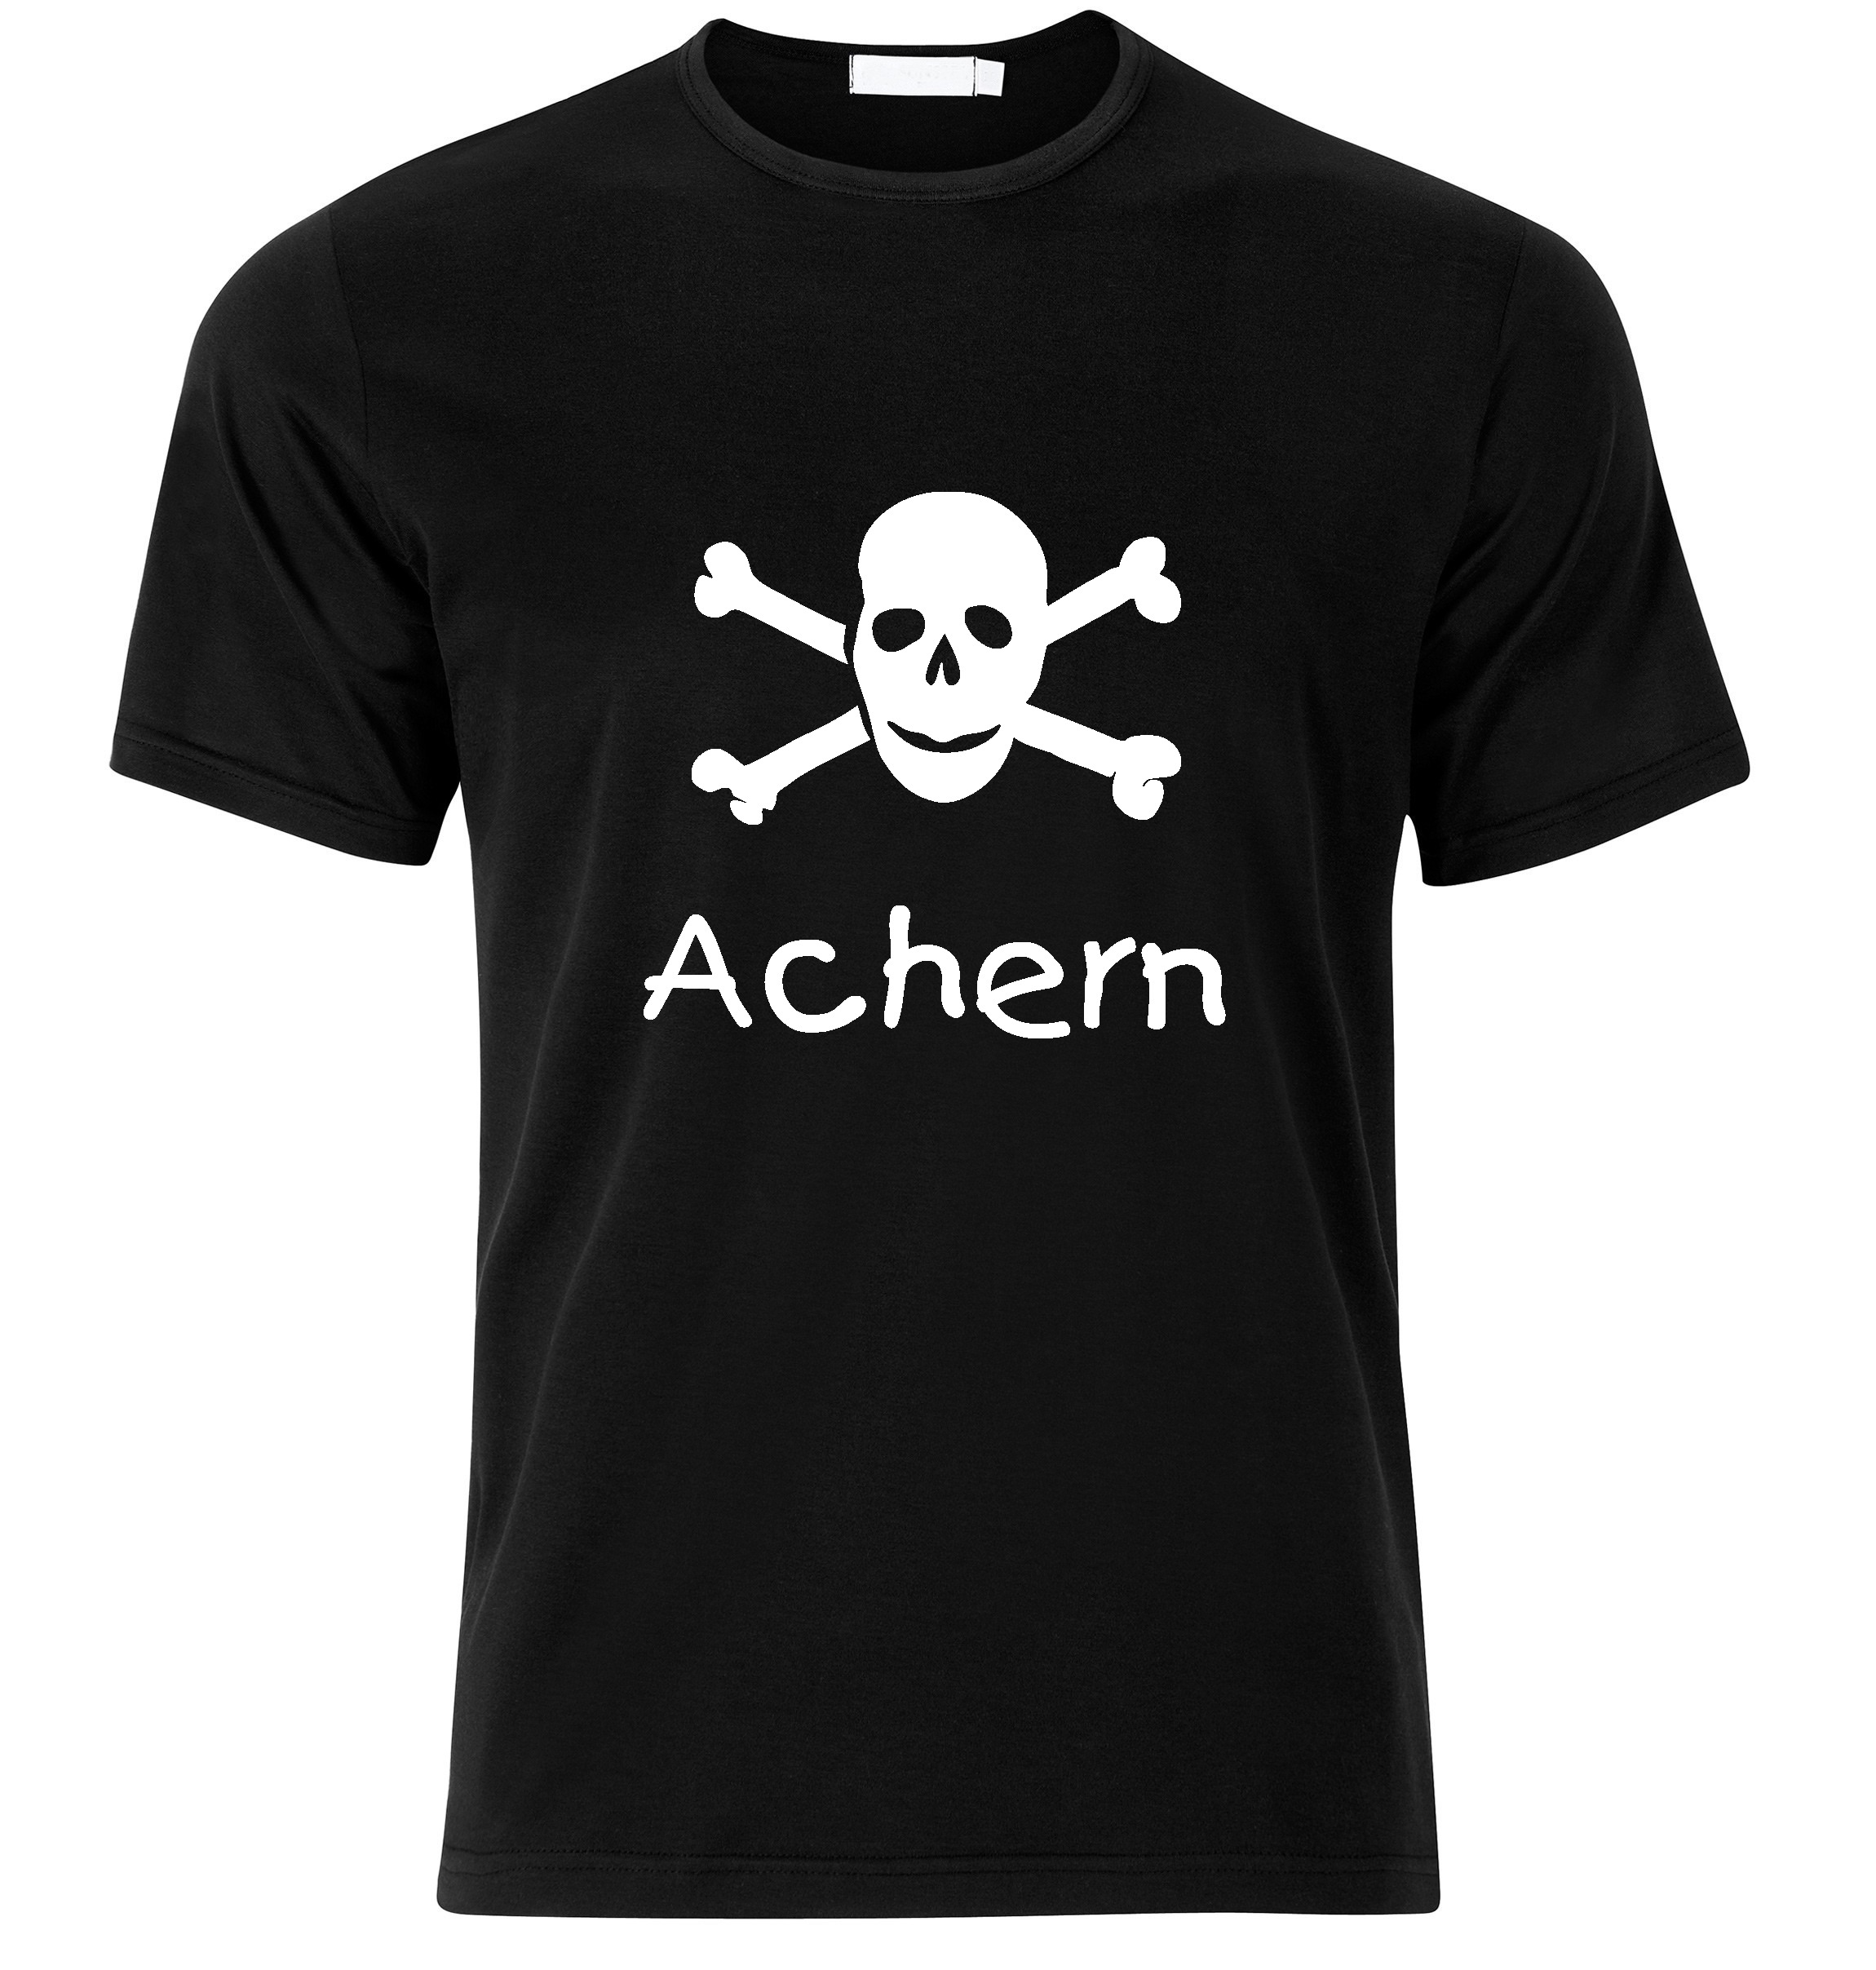 T-Shirt Achern Jolly Roger, Totenkopf